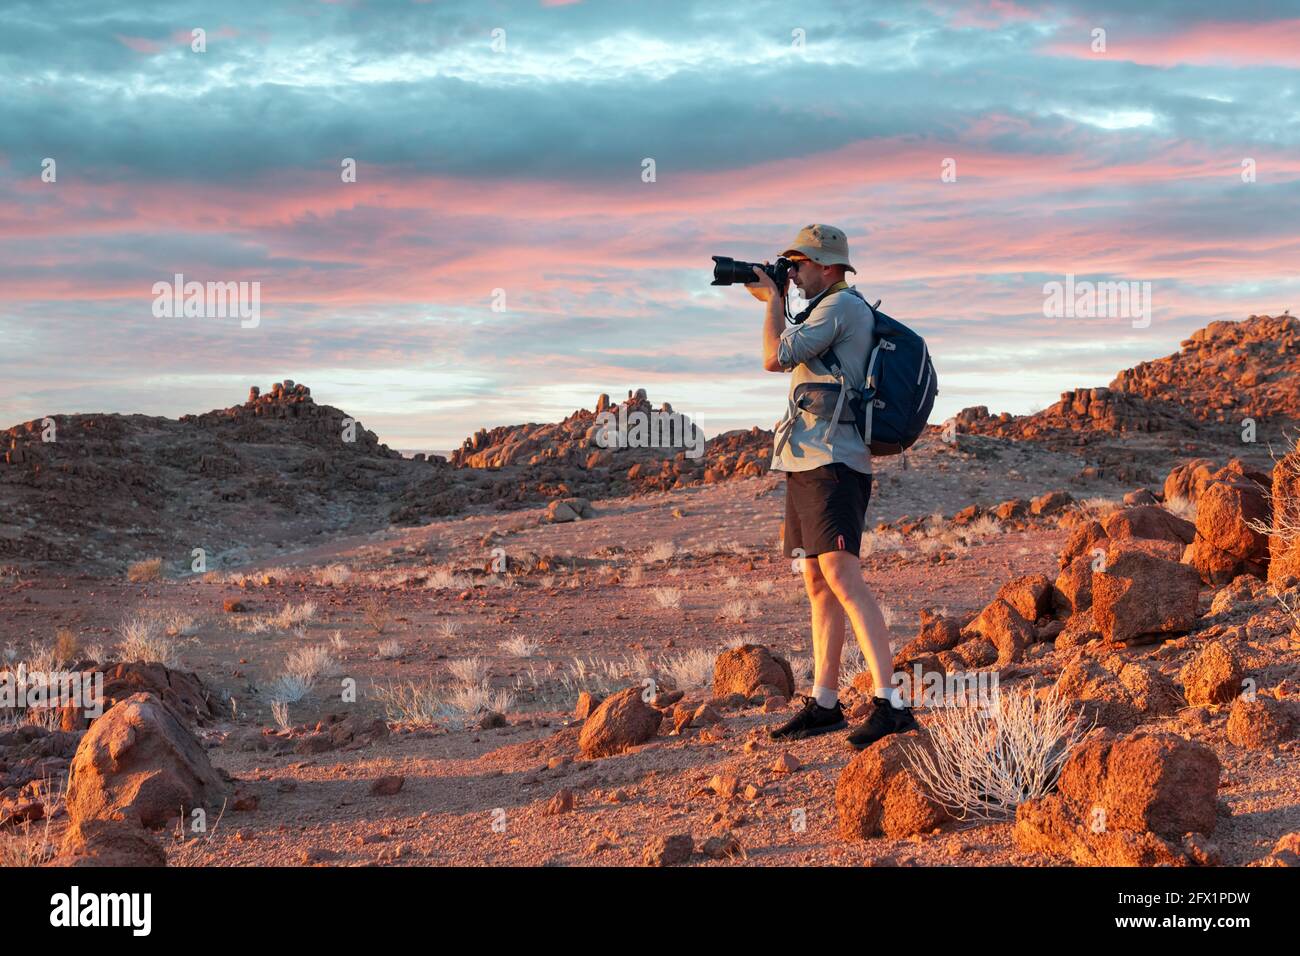 Photographe prenant des photos dans les rochers du désert de Namib, Namibie, Afrique. Montagnes rouges et ciel de coucher de soleil en arrière-plan. Photographie de paysage Banque D'Images